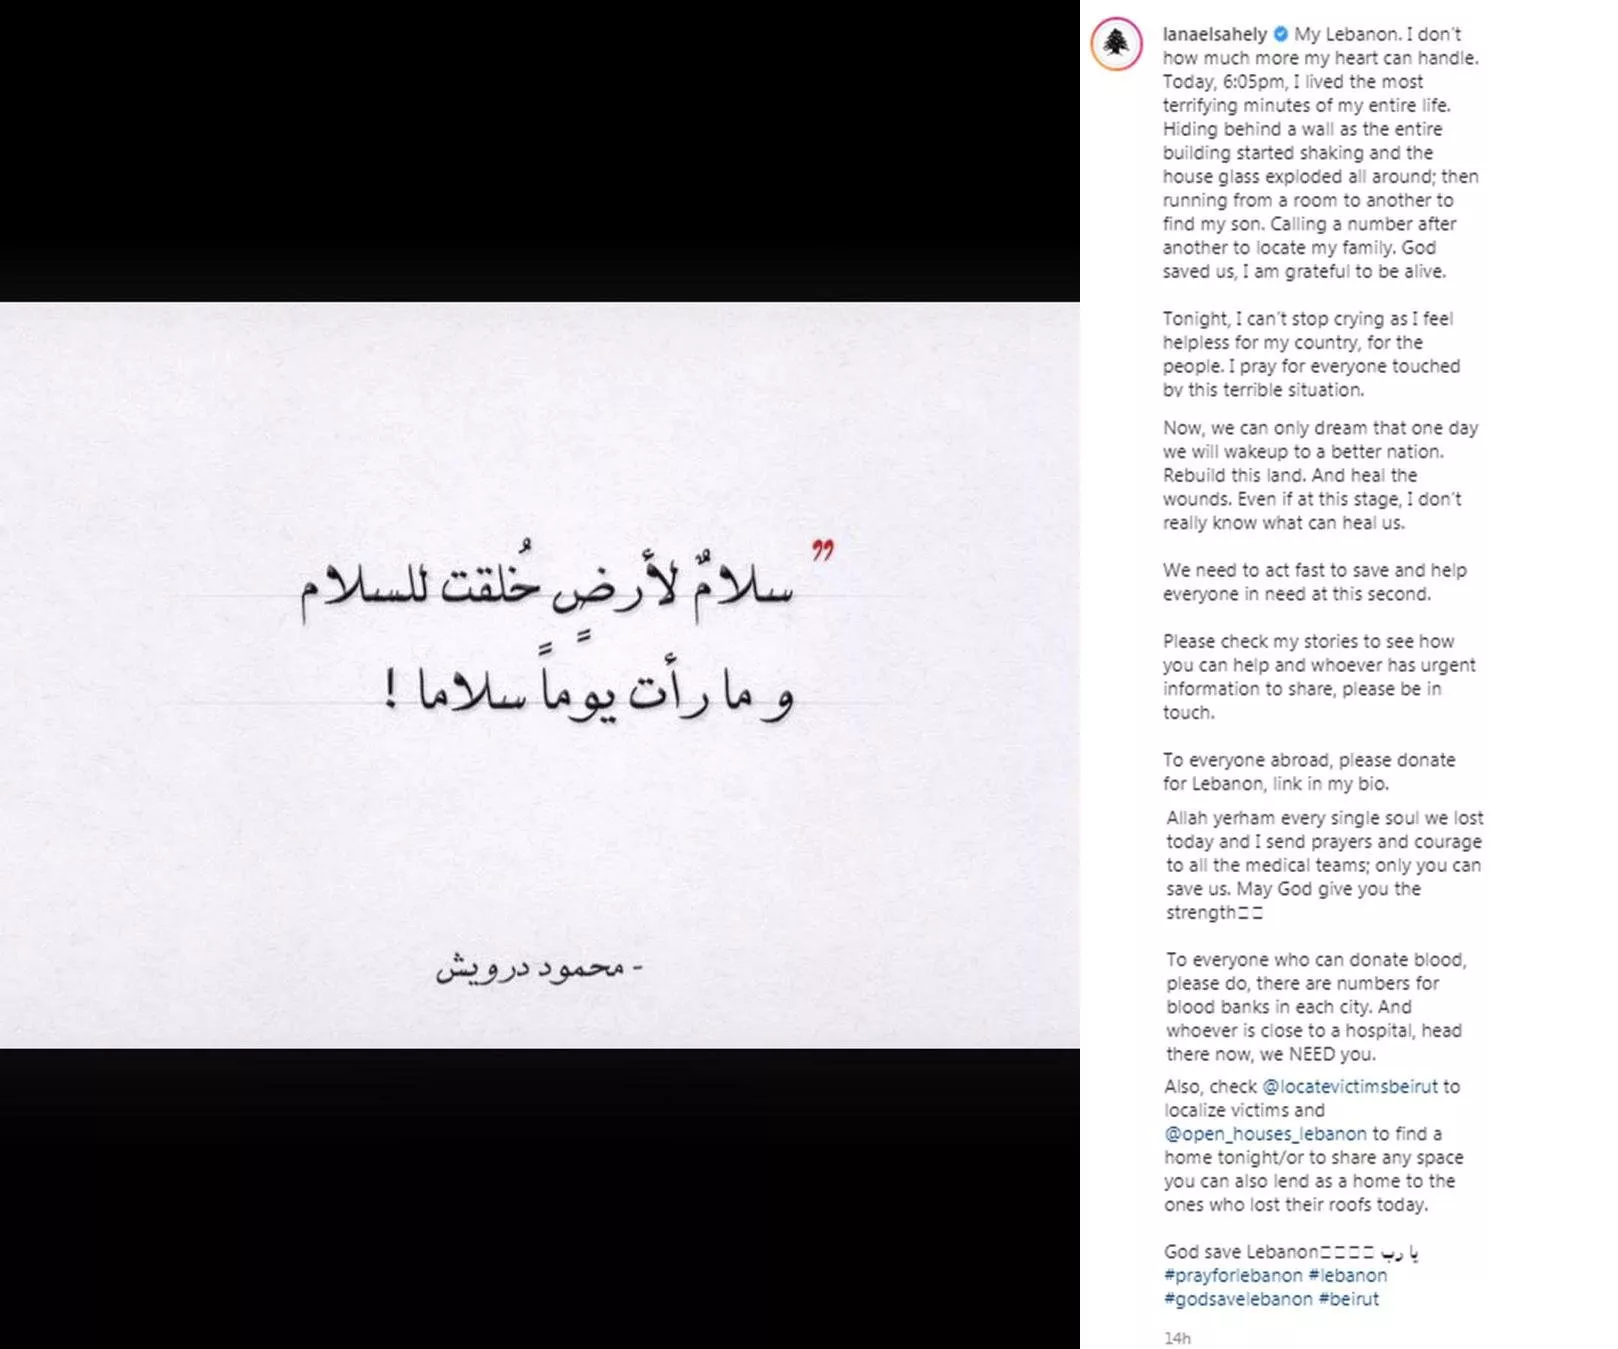 التعليقات الأولى للنجمات وشخصيات السوشيل ميديا اللبنانيات على انفجار بيروت